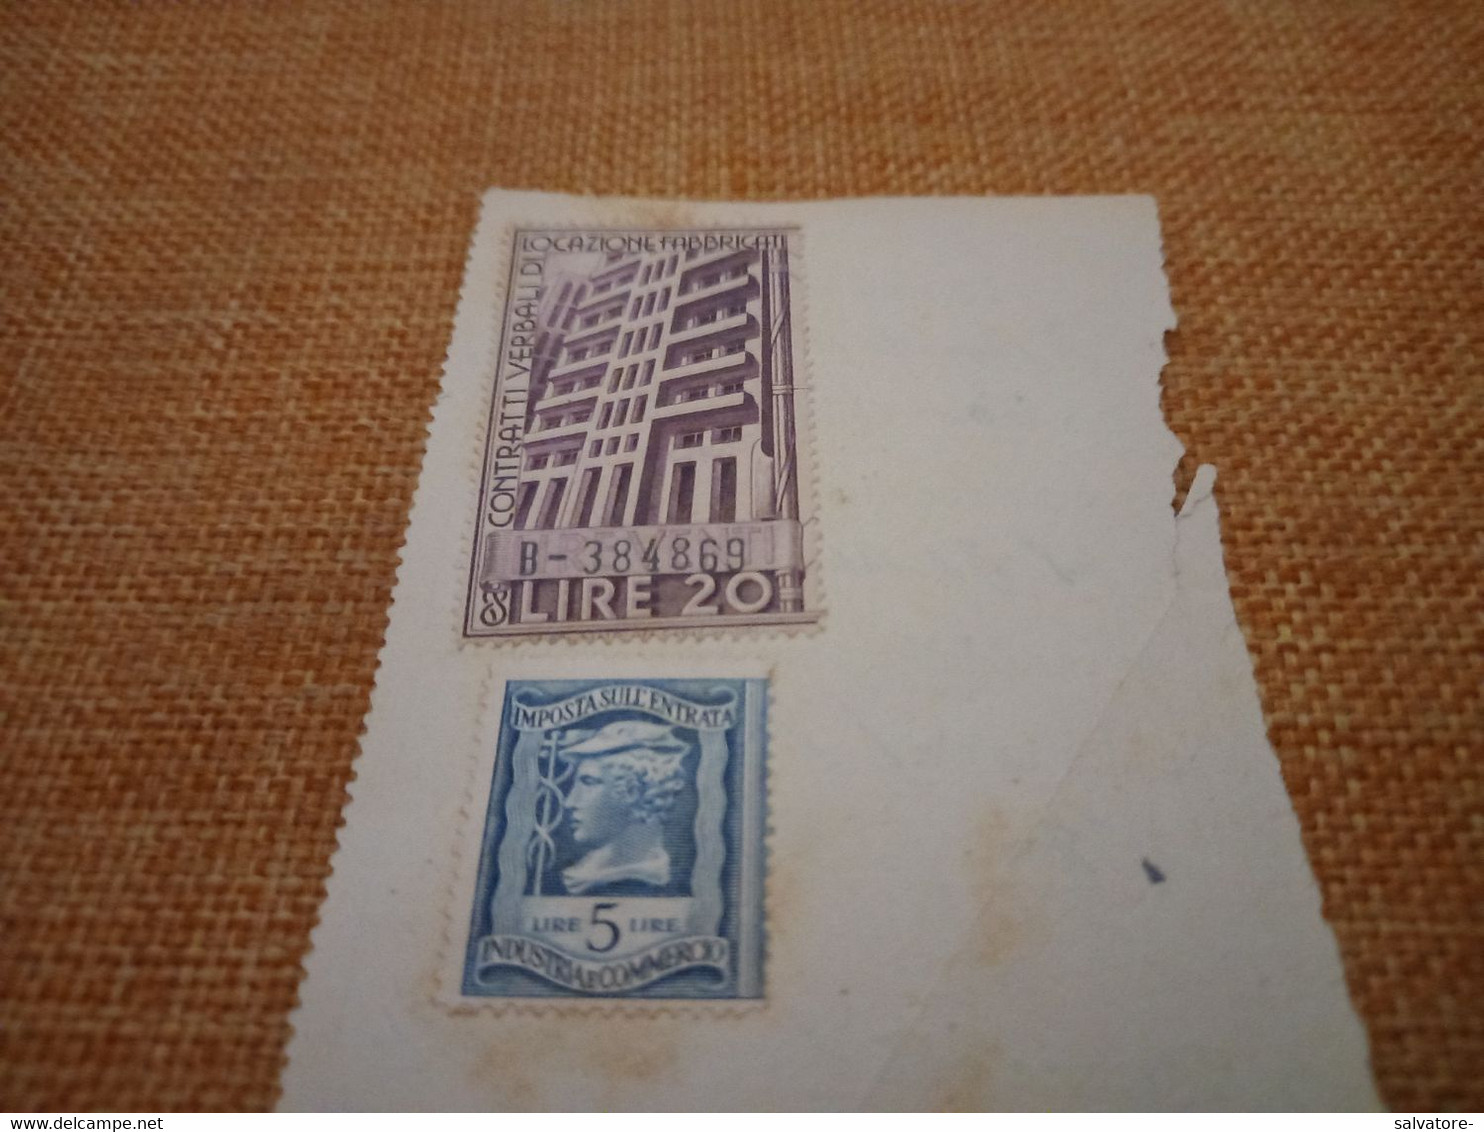 RICEVUTA CON MARCA DA BOLLO CONTRATTI VERBALI LOCAZIONE FABBRICATI 1945 - Revenue Stamps